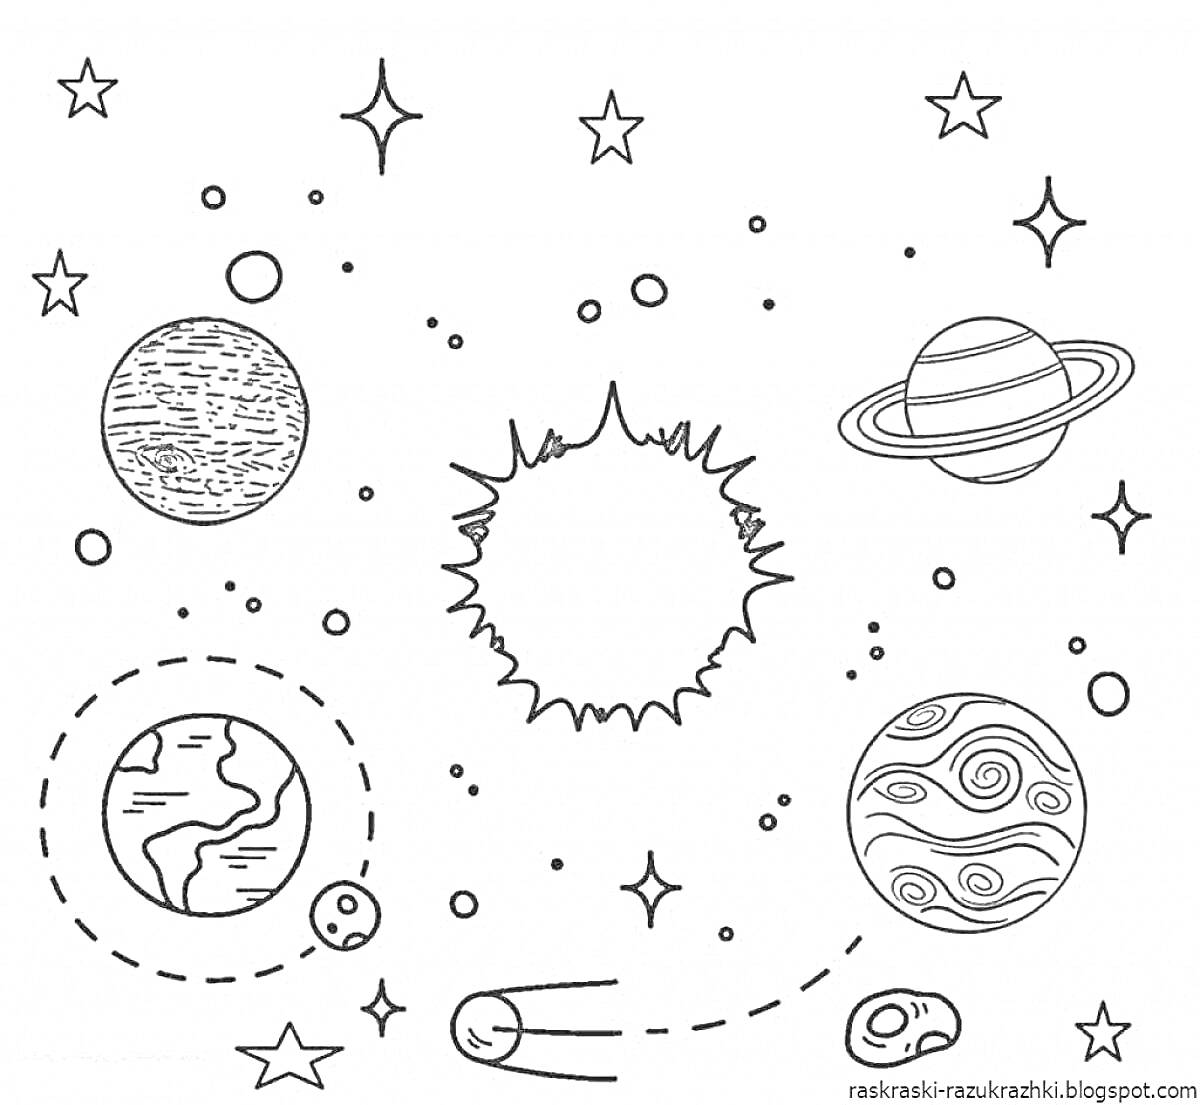 Раскраска Планеты солнечной системы для детей. Изображение содержит солнце в центре, шесть звезд различных форм, планеты с кольцами, три орбитальных пути с точками, несколько мелких планет или спутников, комету с хвостом, большие планеты с различными узорами на пов